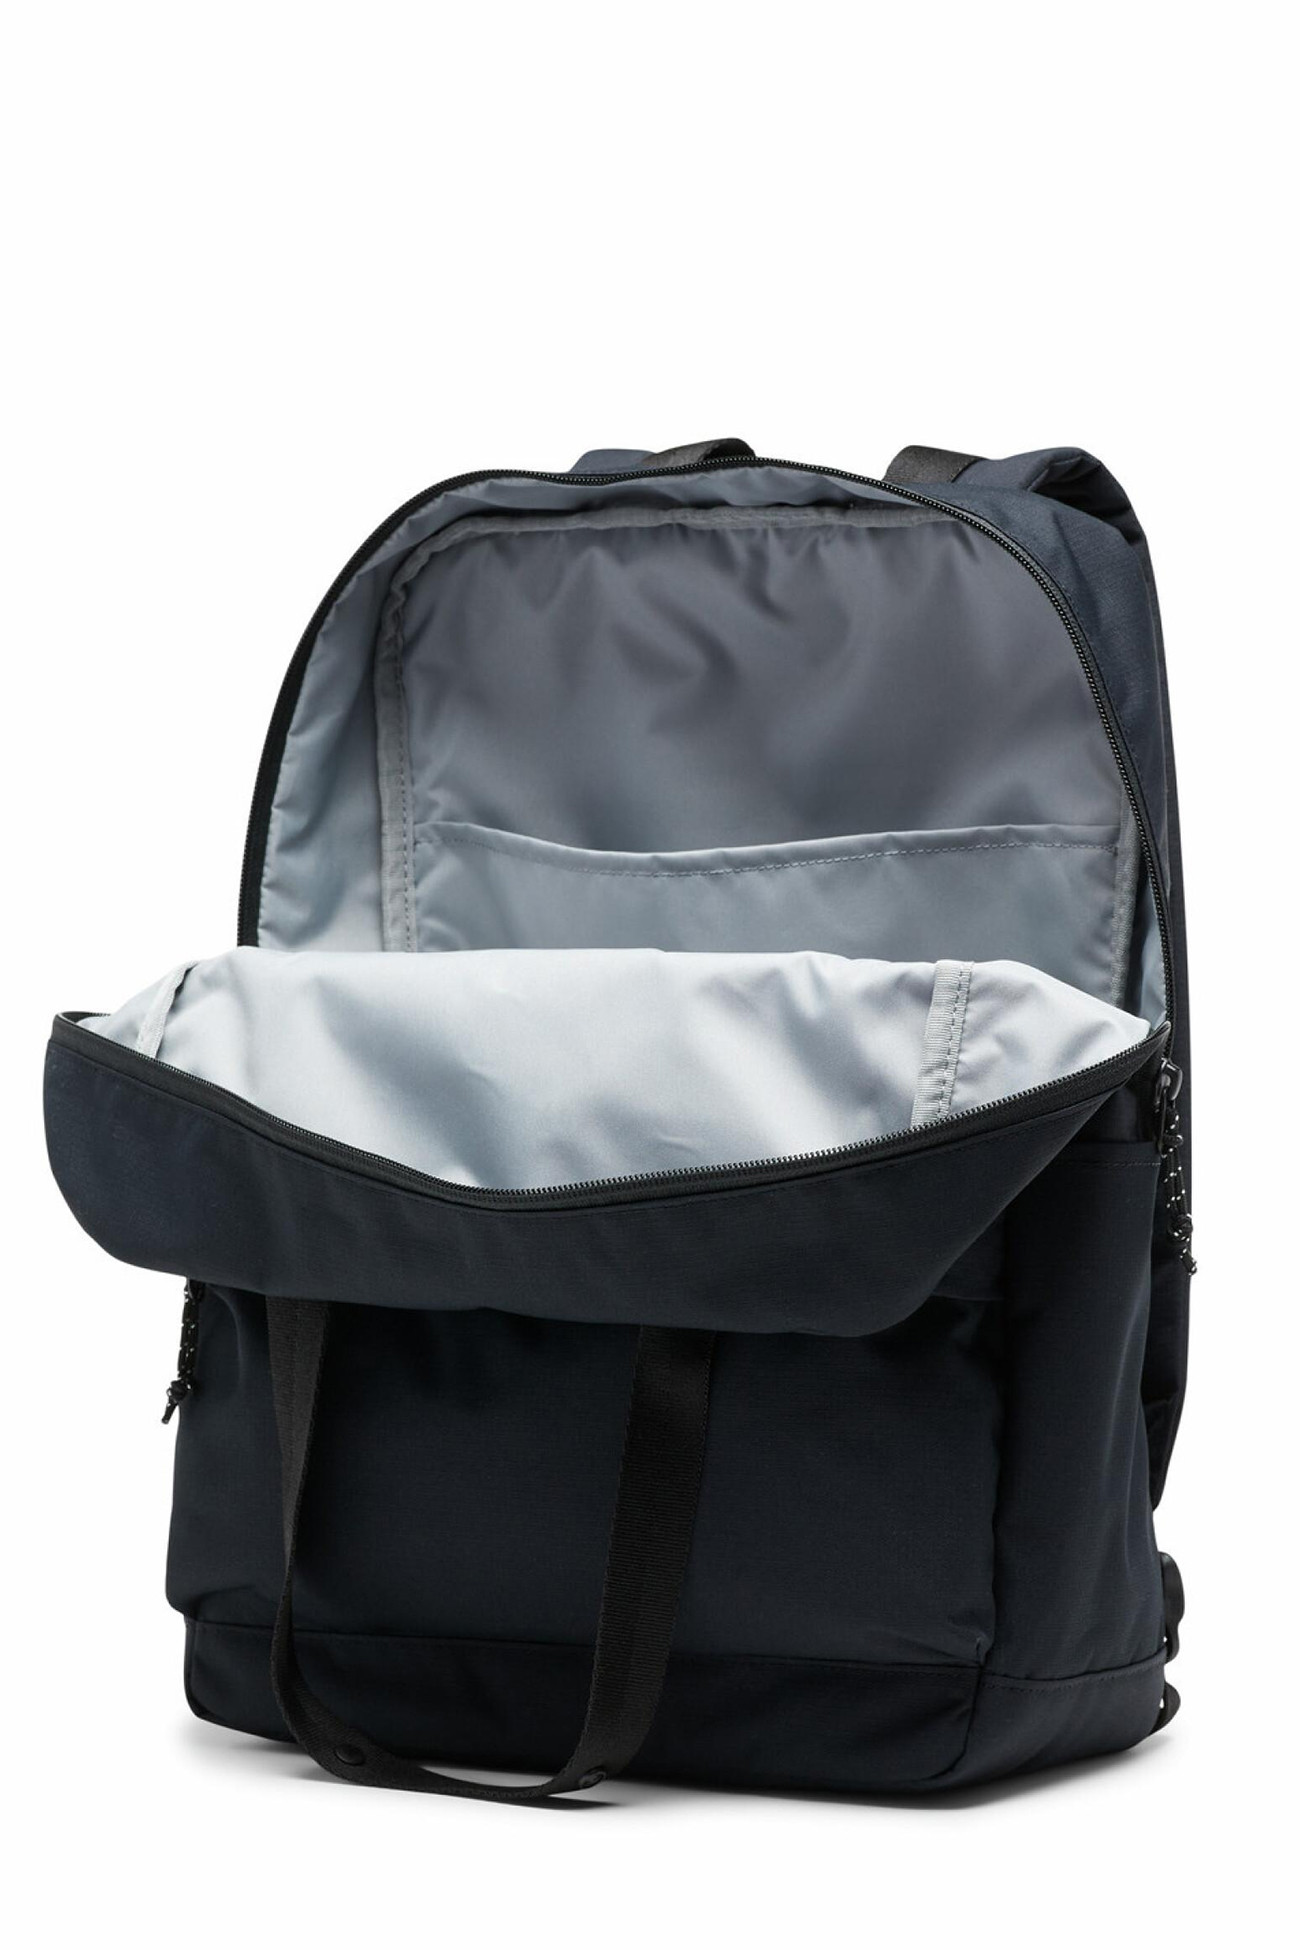 Рюкзак Columbia Trek™ 24L Backpack чорний 1997411-010  изображение 3